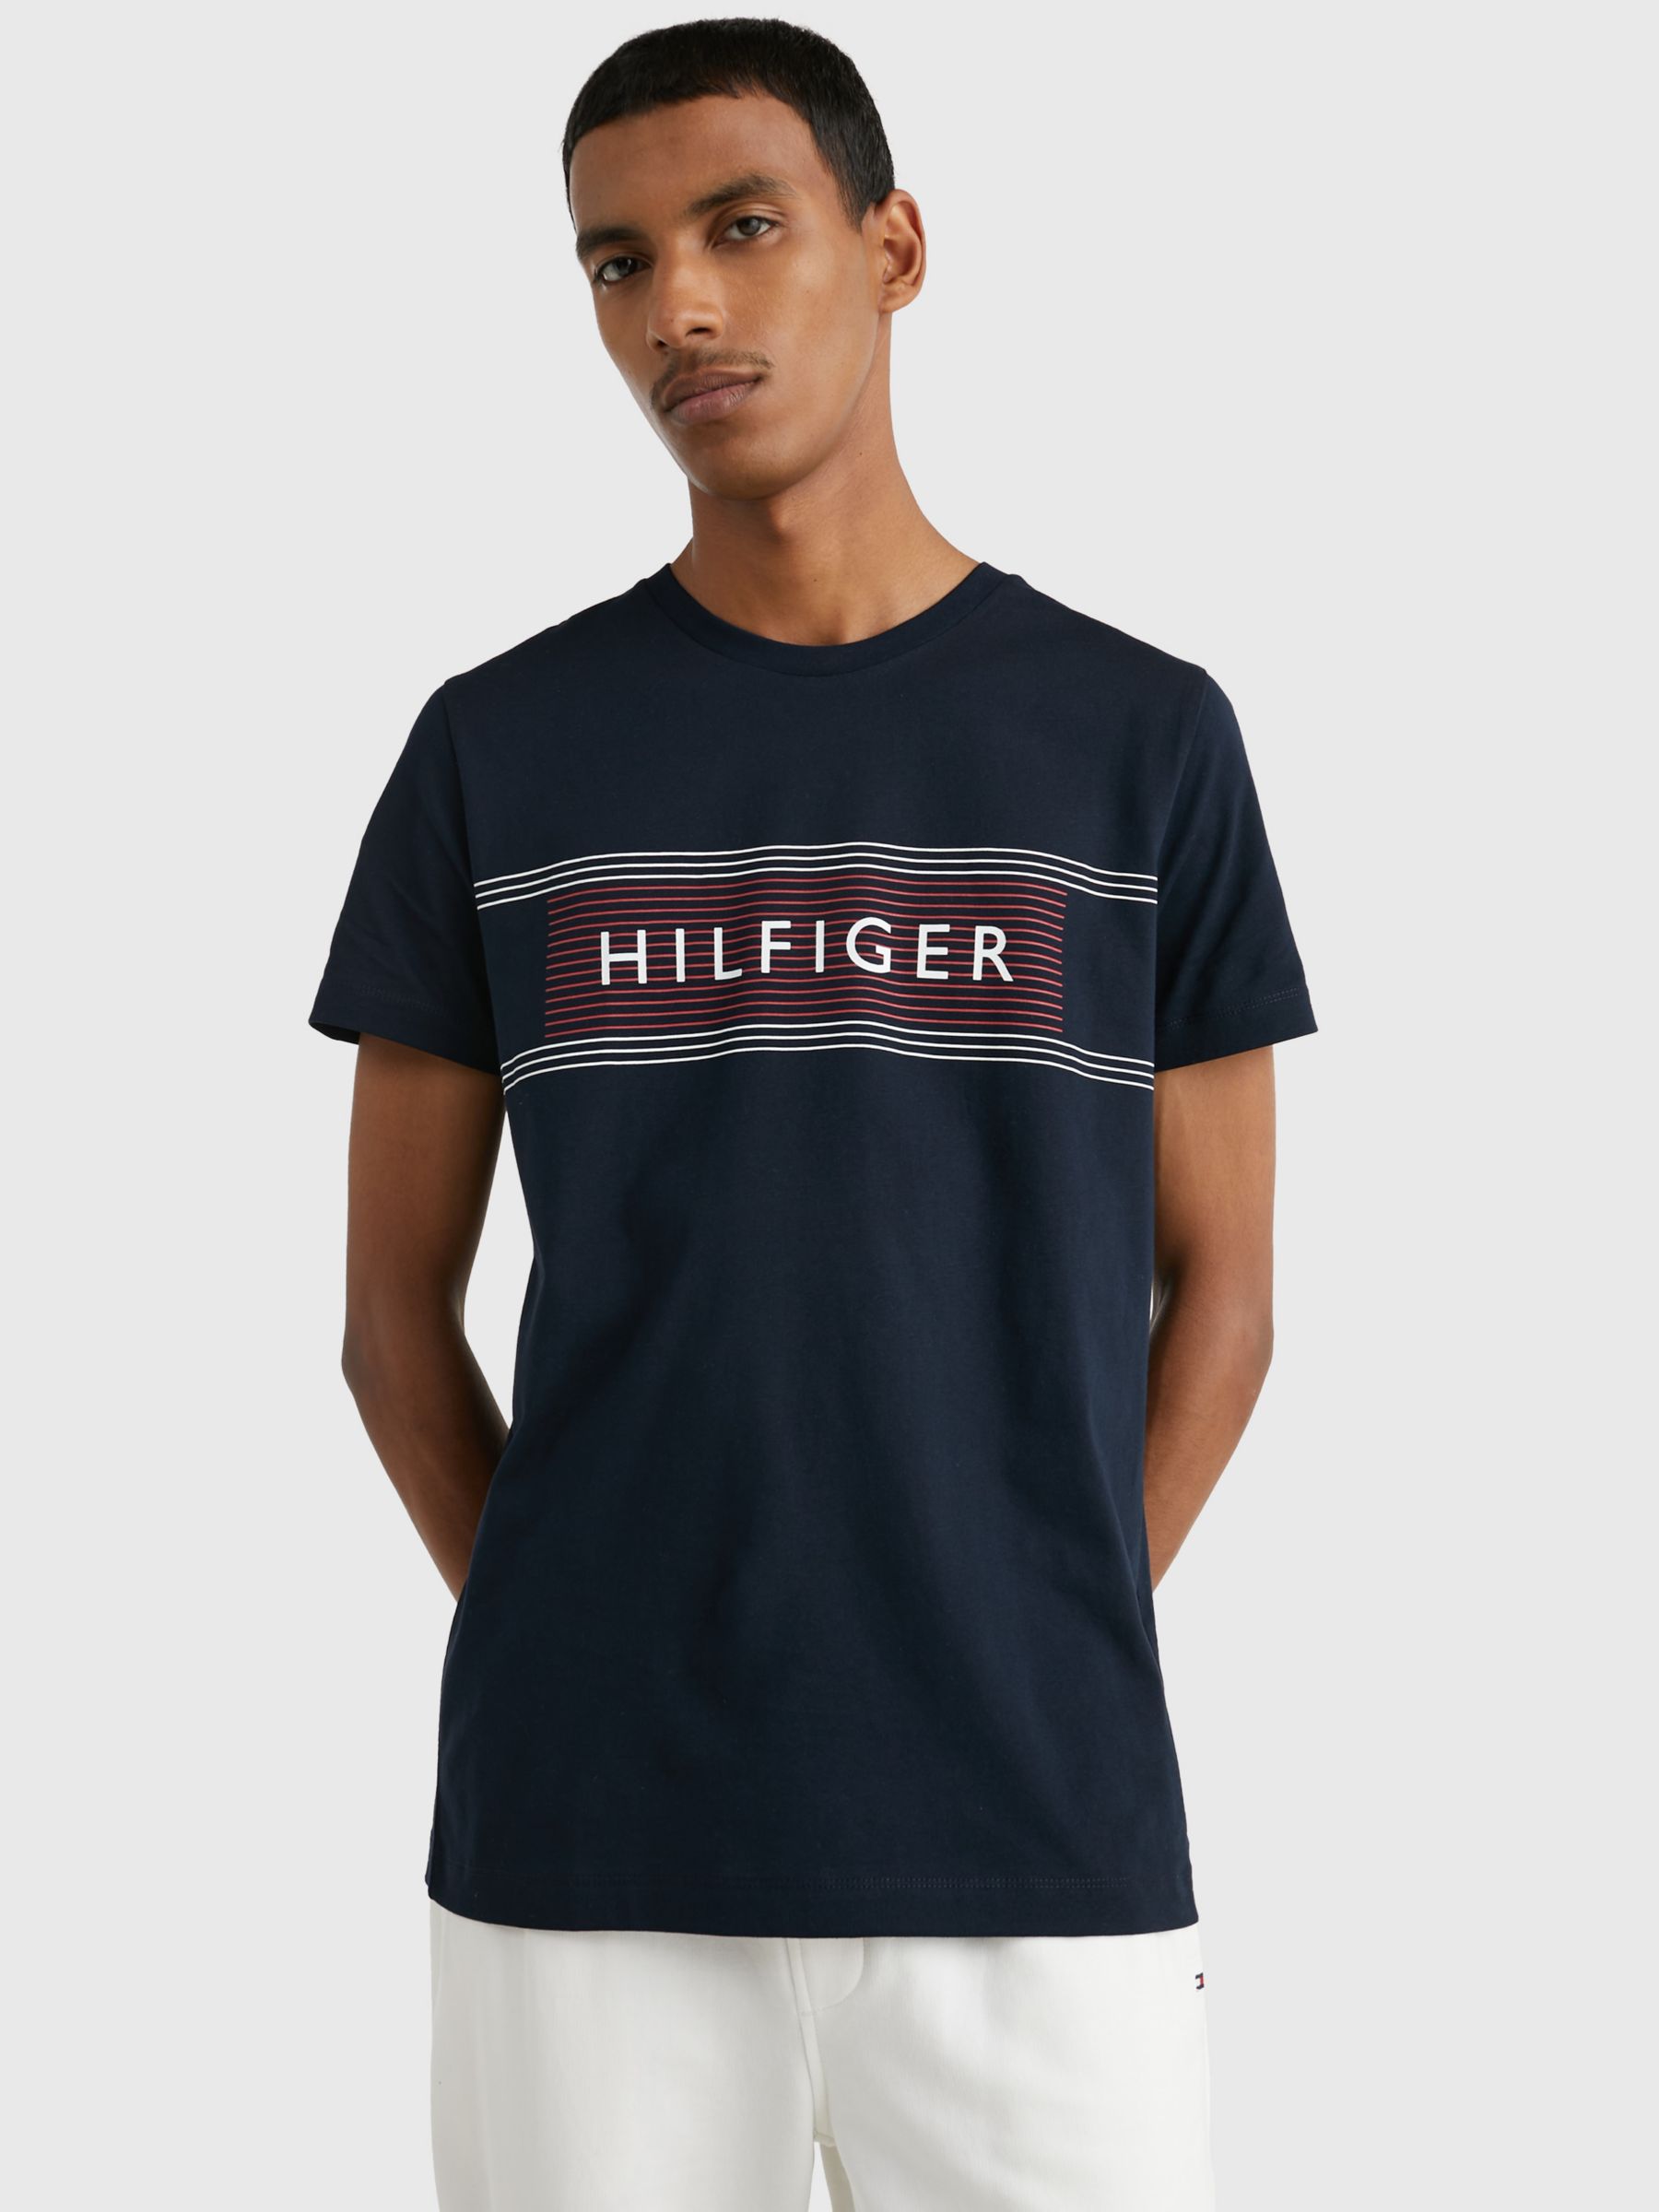 Tommy Hilfiger Men's Logo T-Shirt - Black